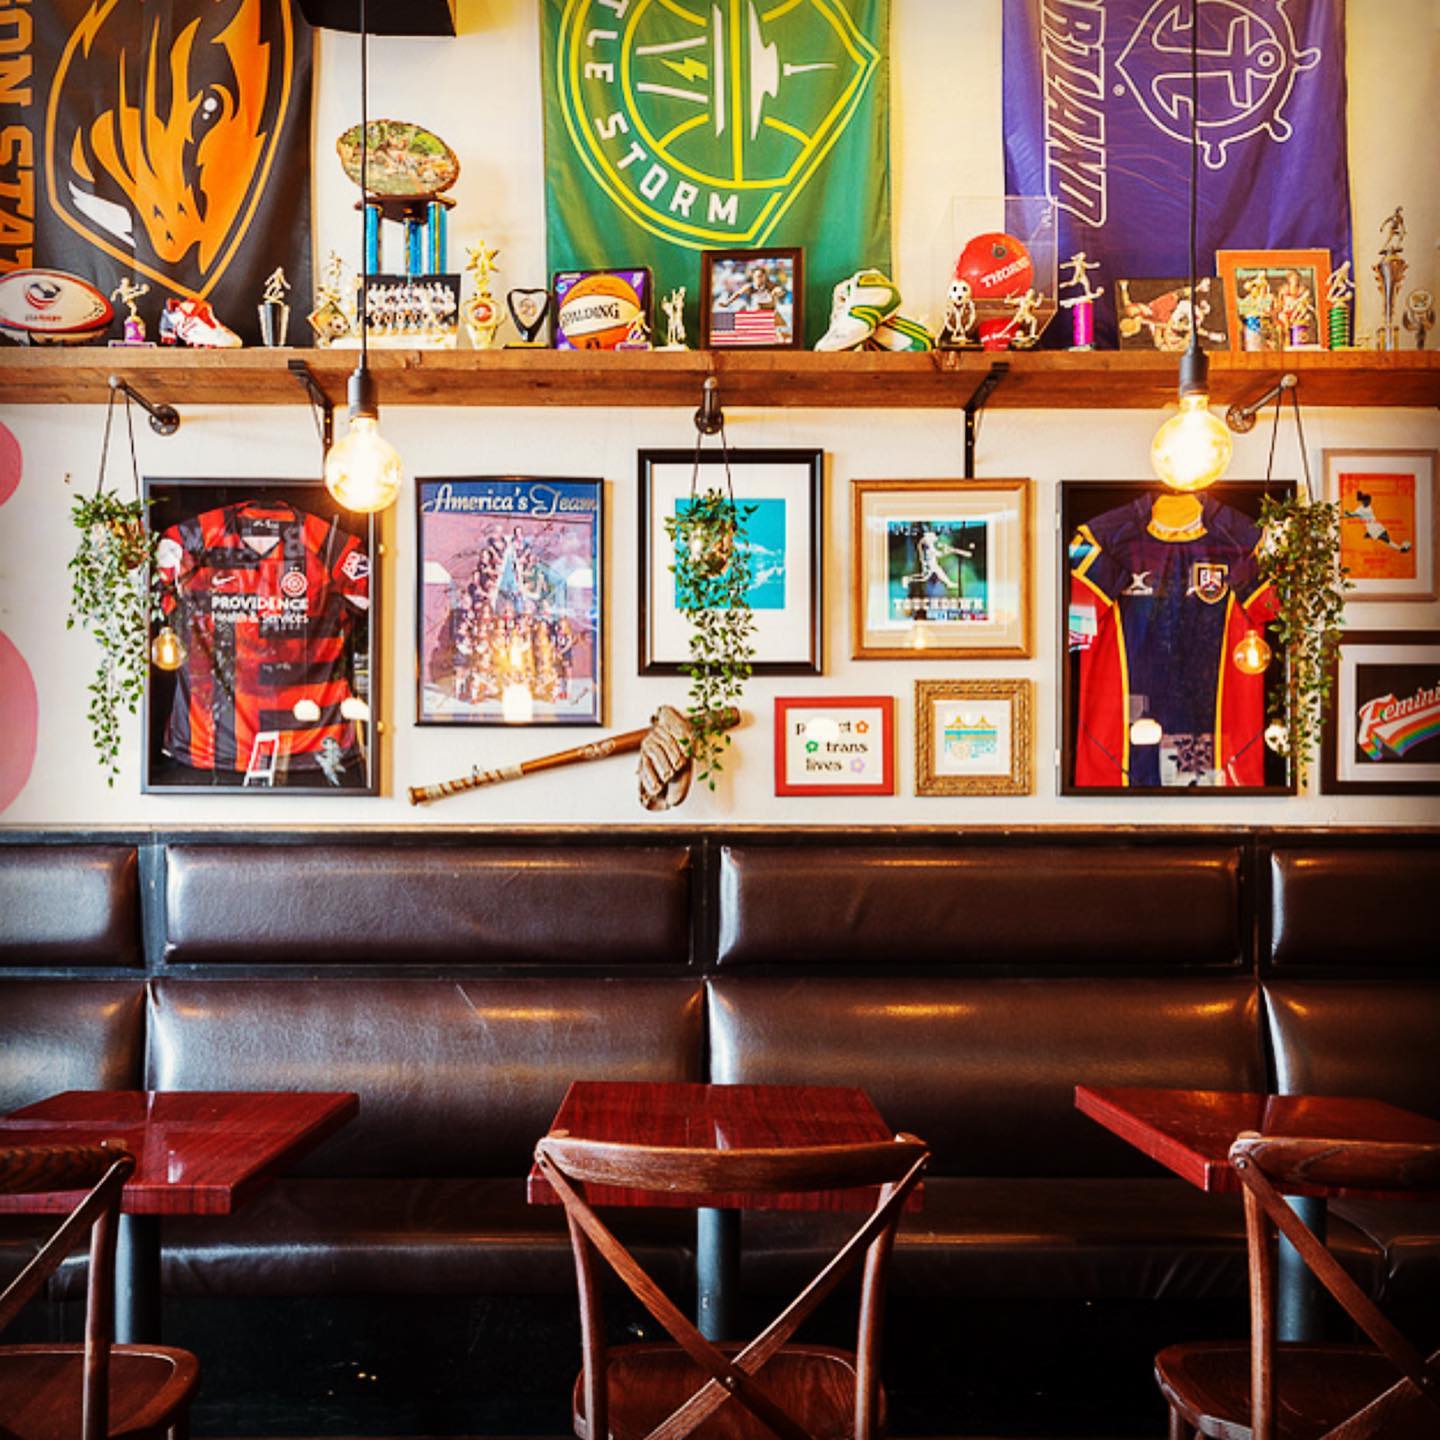 The Sports Bra: A women's sports bar & restaurant by Jenny Nguyen —  Kickstarter